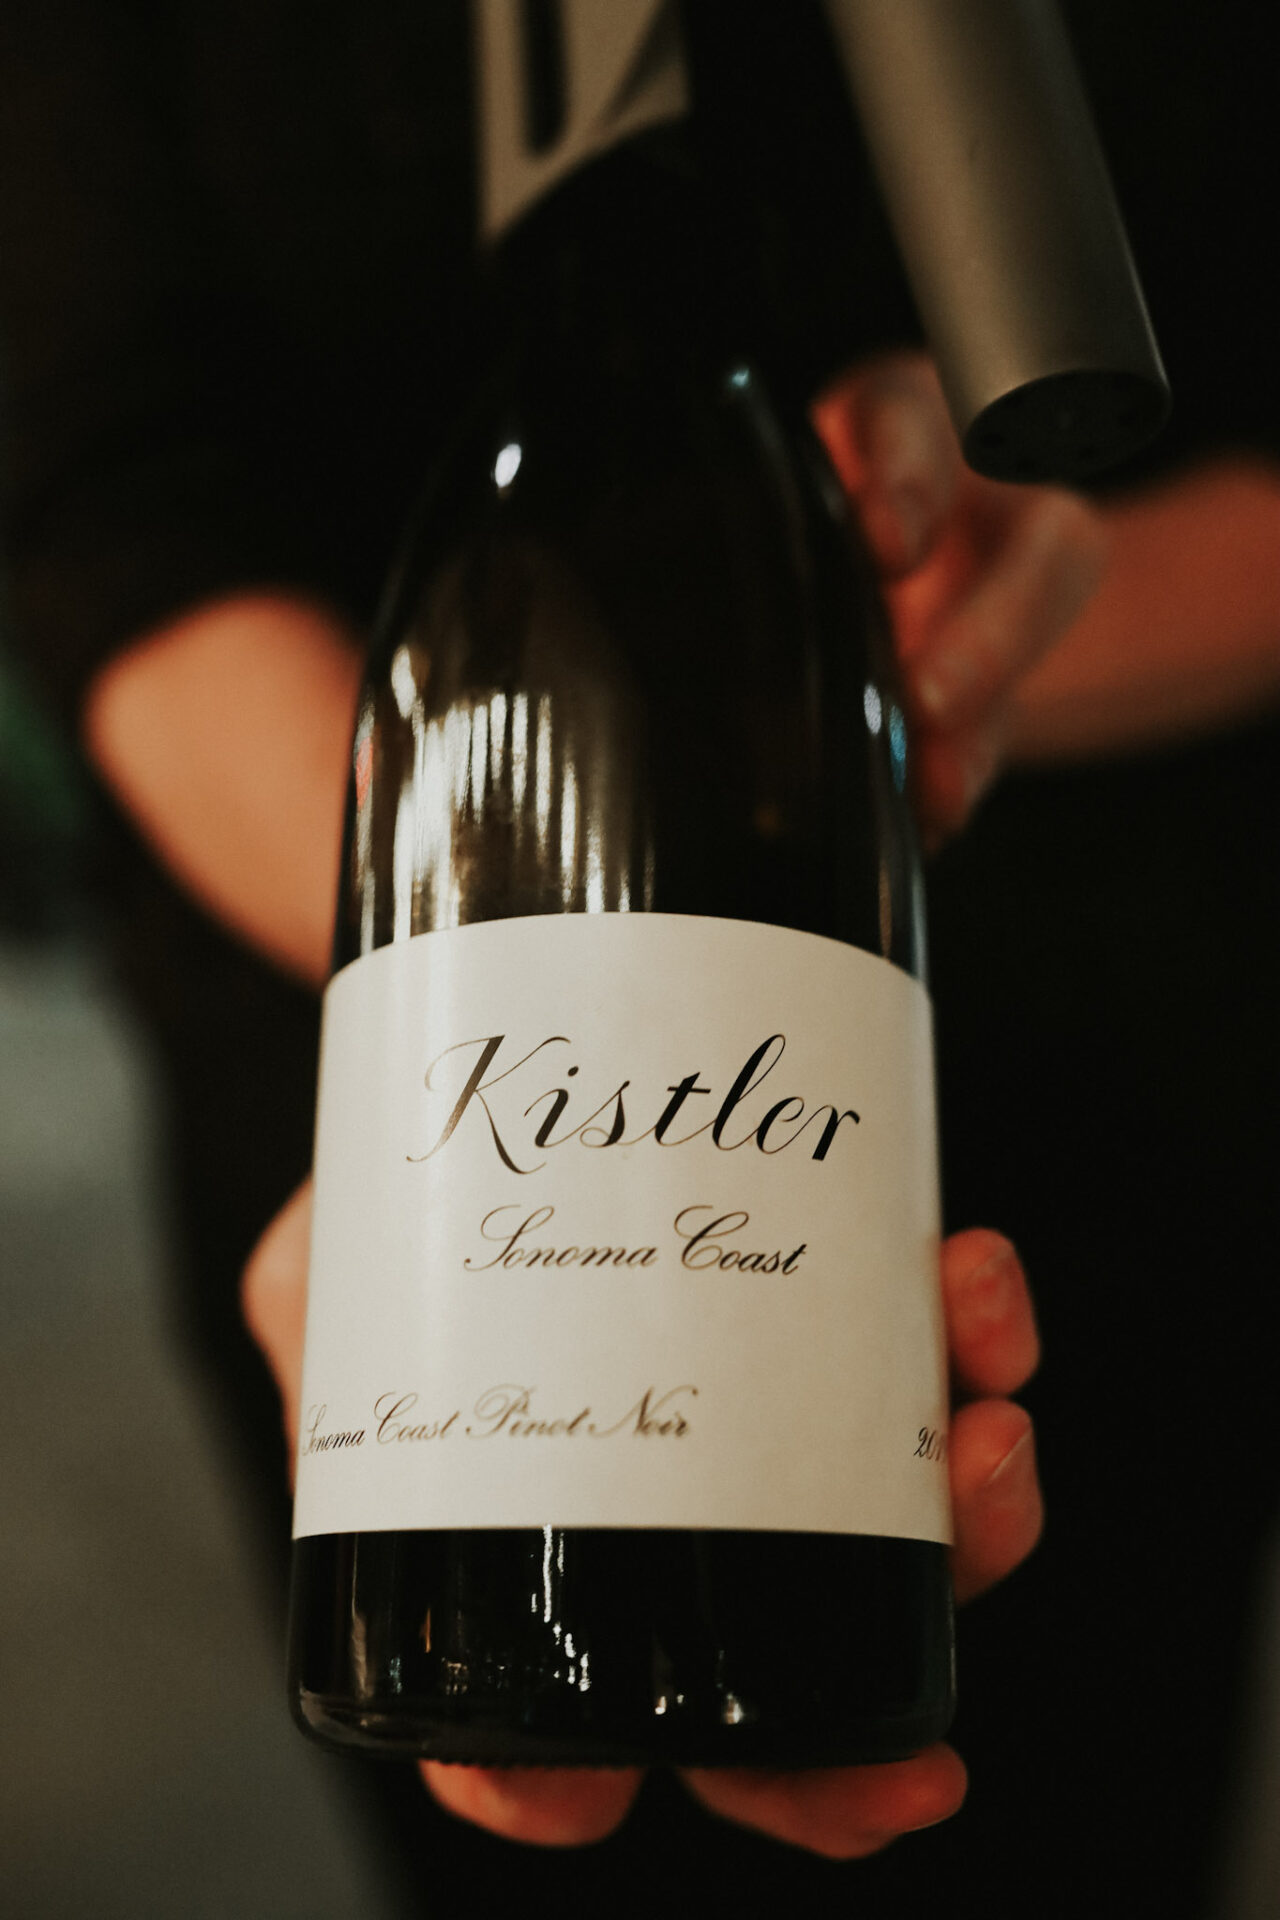 Kistler Pinot Noir bottle